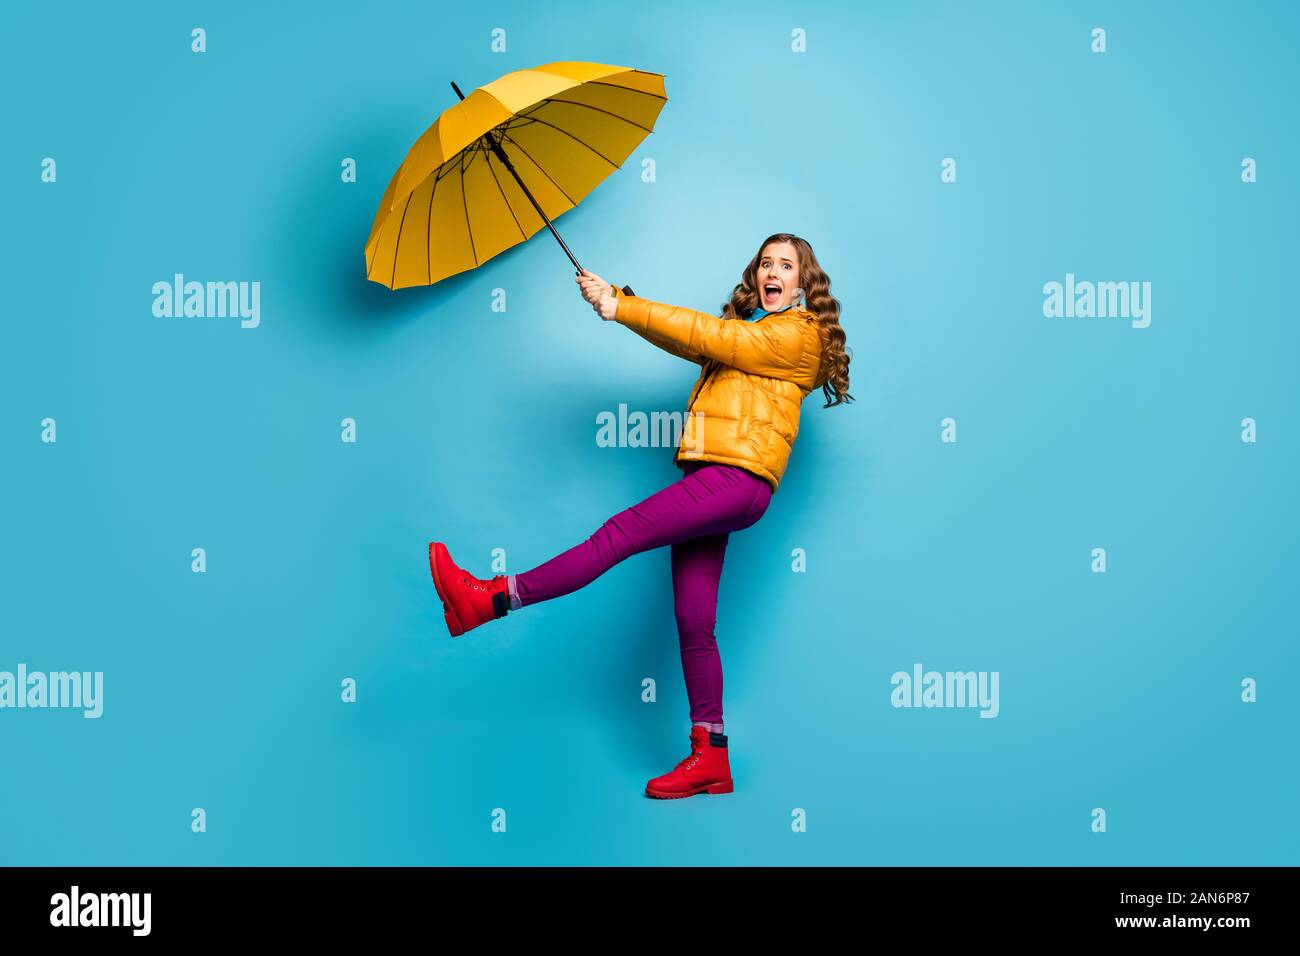 Help me. La piena dimensione della foto del profilo di Crazy scioccato lady tenere ombrello volare con vento che soffia usura sovrarivestimento giallo sciarpa viola pantaloni calzature rosso Foto Stock